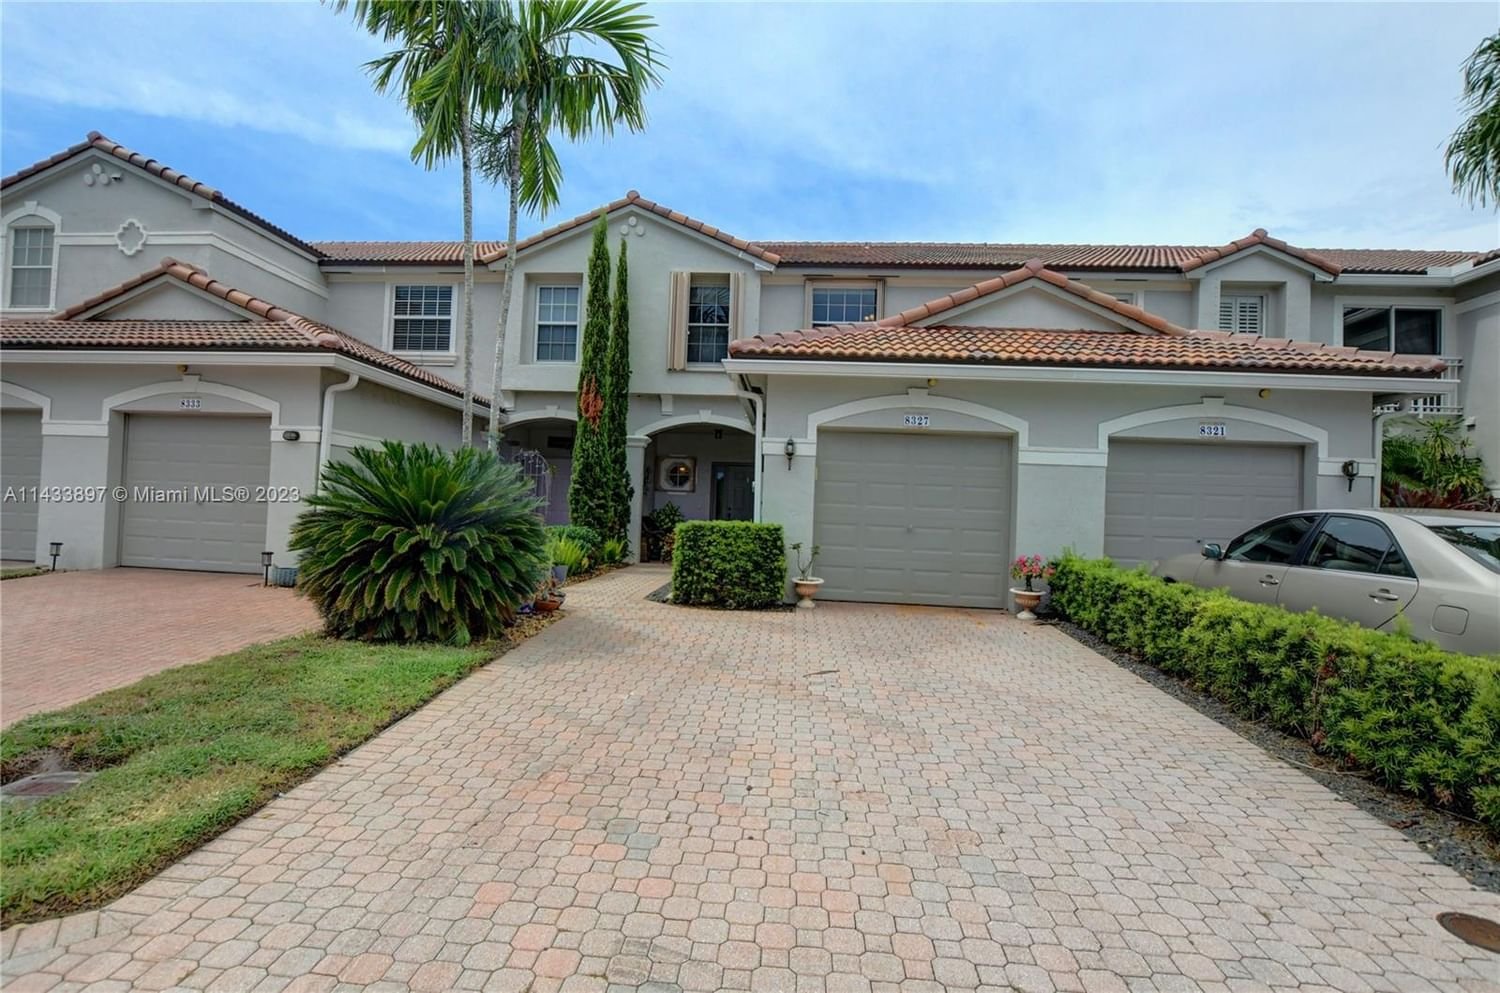 Real estate property located at 8327 Via Leonessa #8327, Palm Beach County, Boca Raton, FL